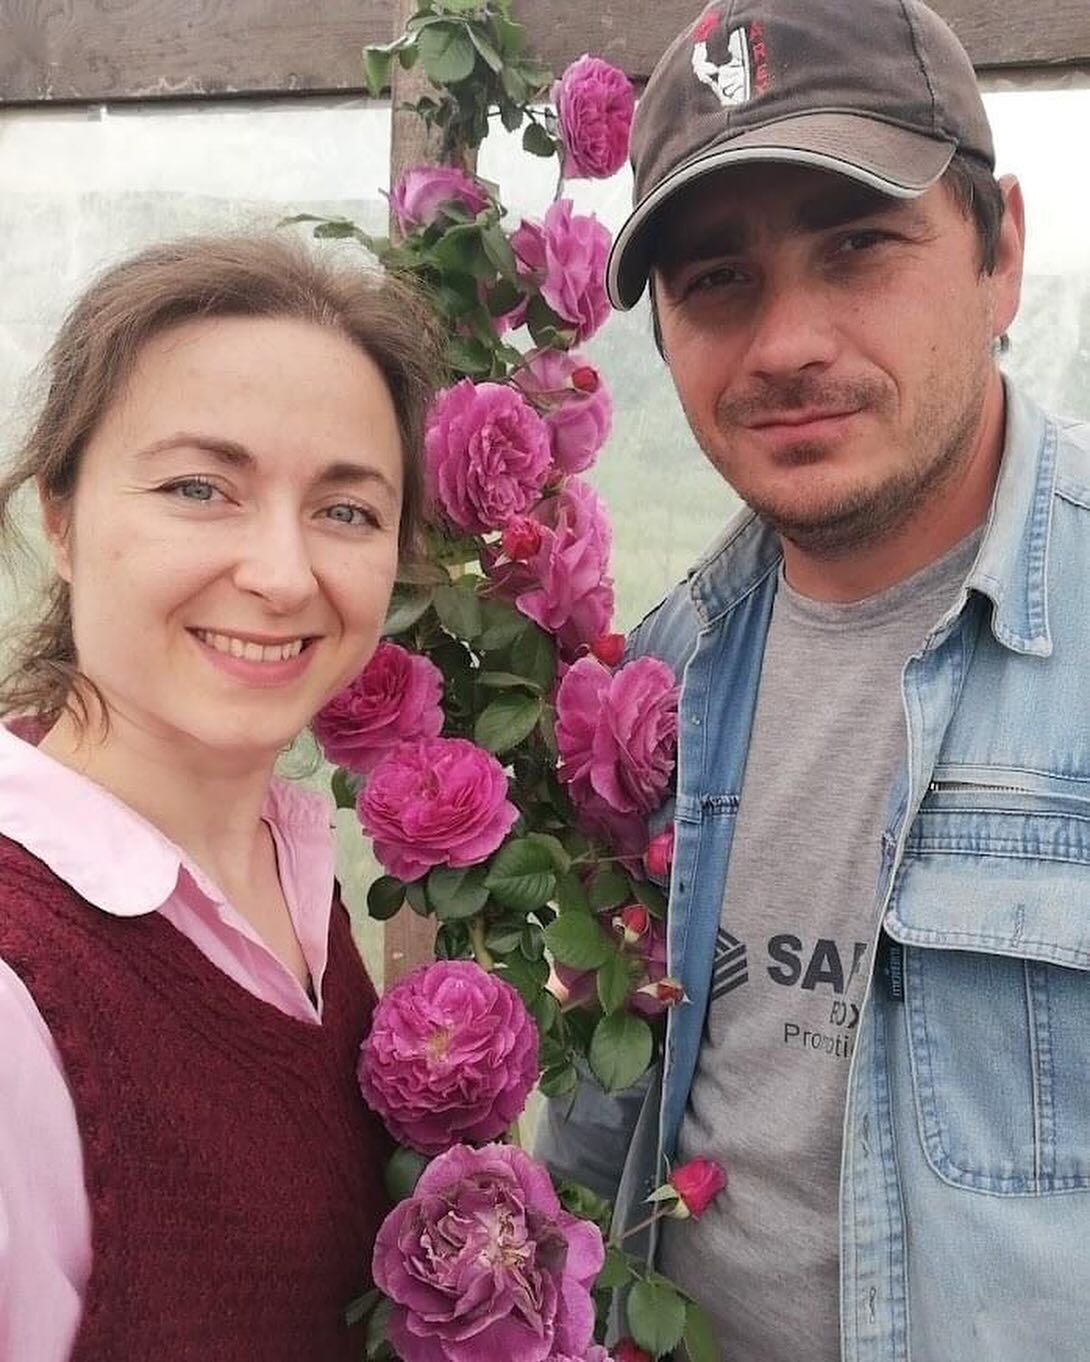 Повернувся додому на щиті: на Донеччині загинув відомий квіткар Ян Квілінський з Миргорода. Фото
